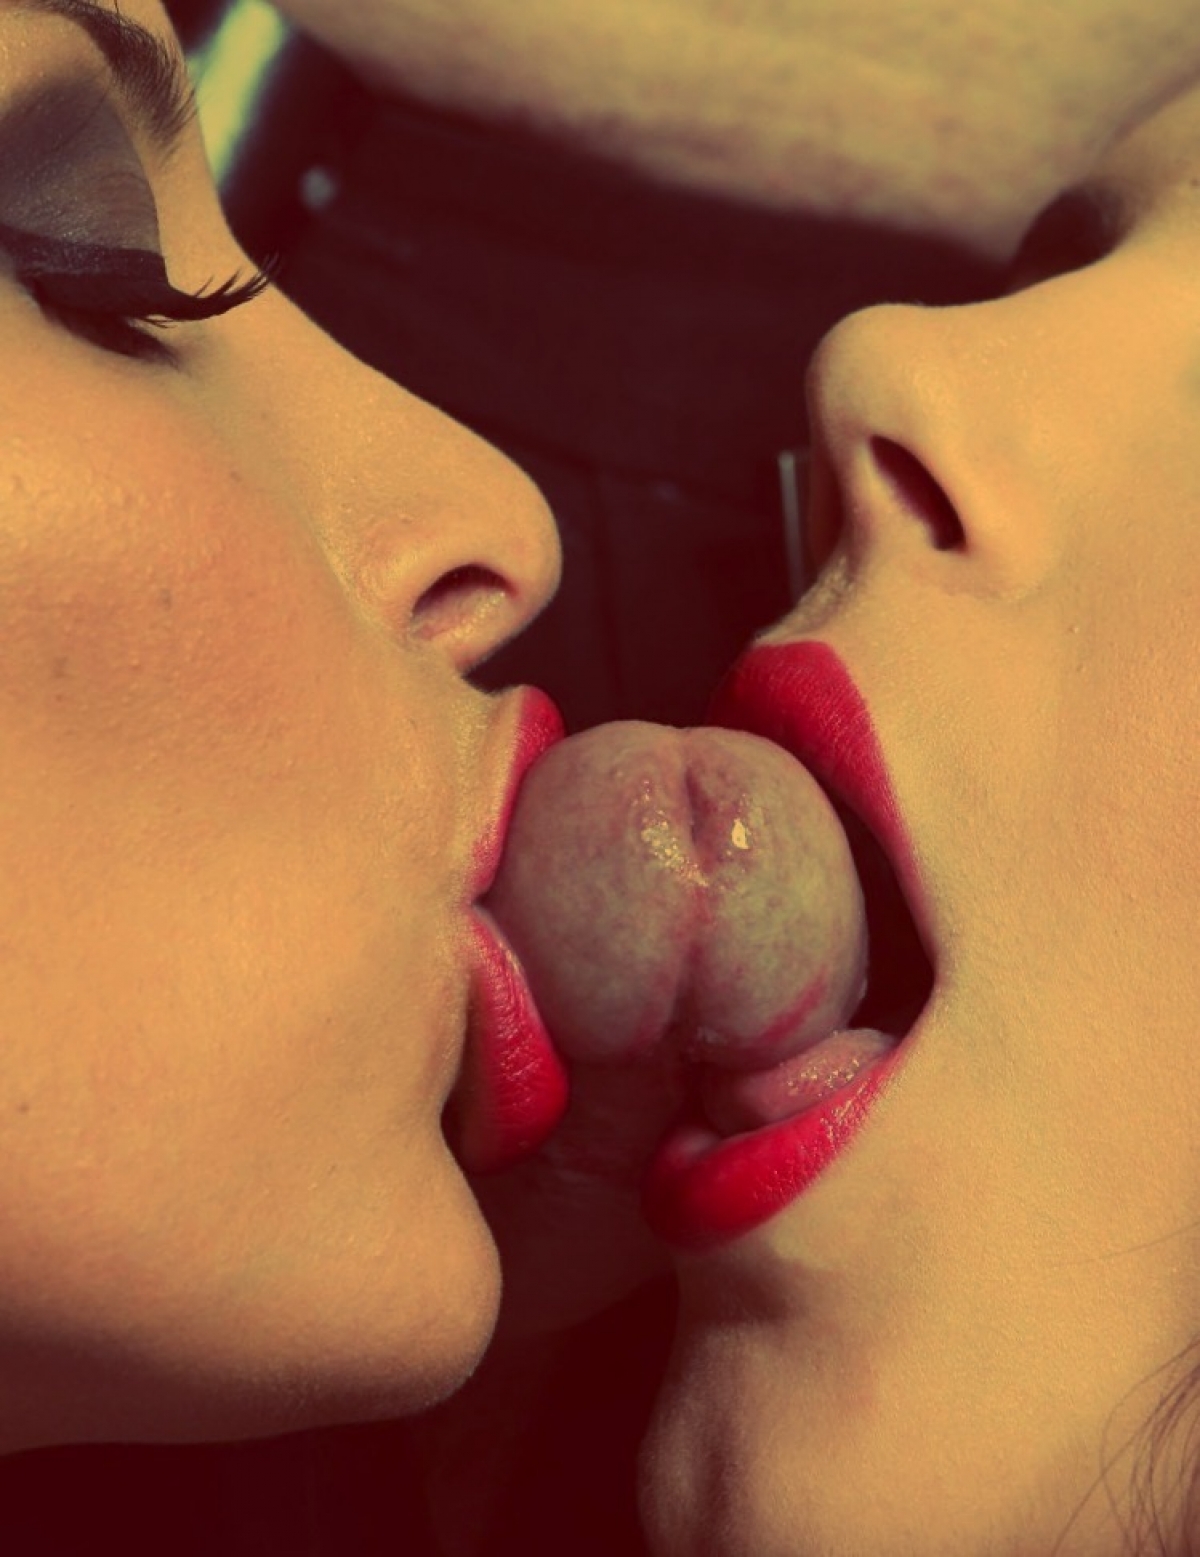 Lesbian tongue kissing and boob sucking